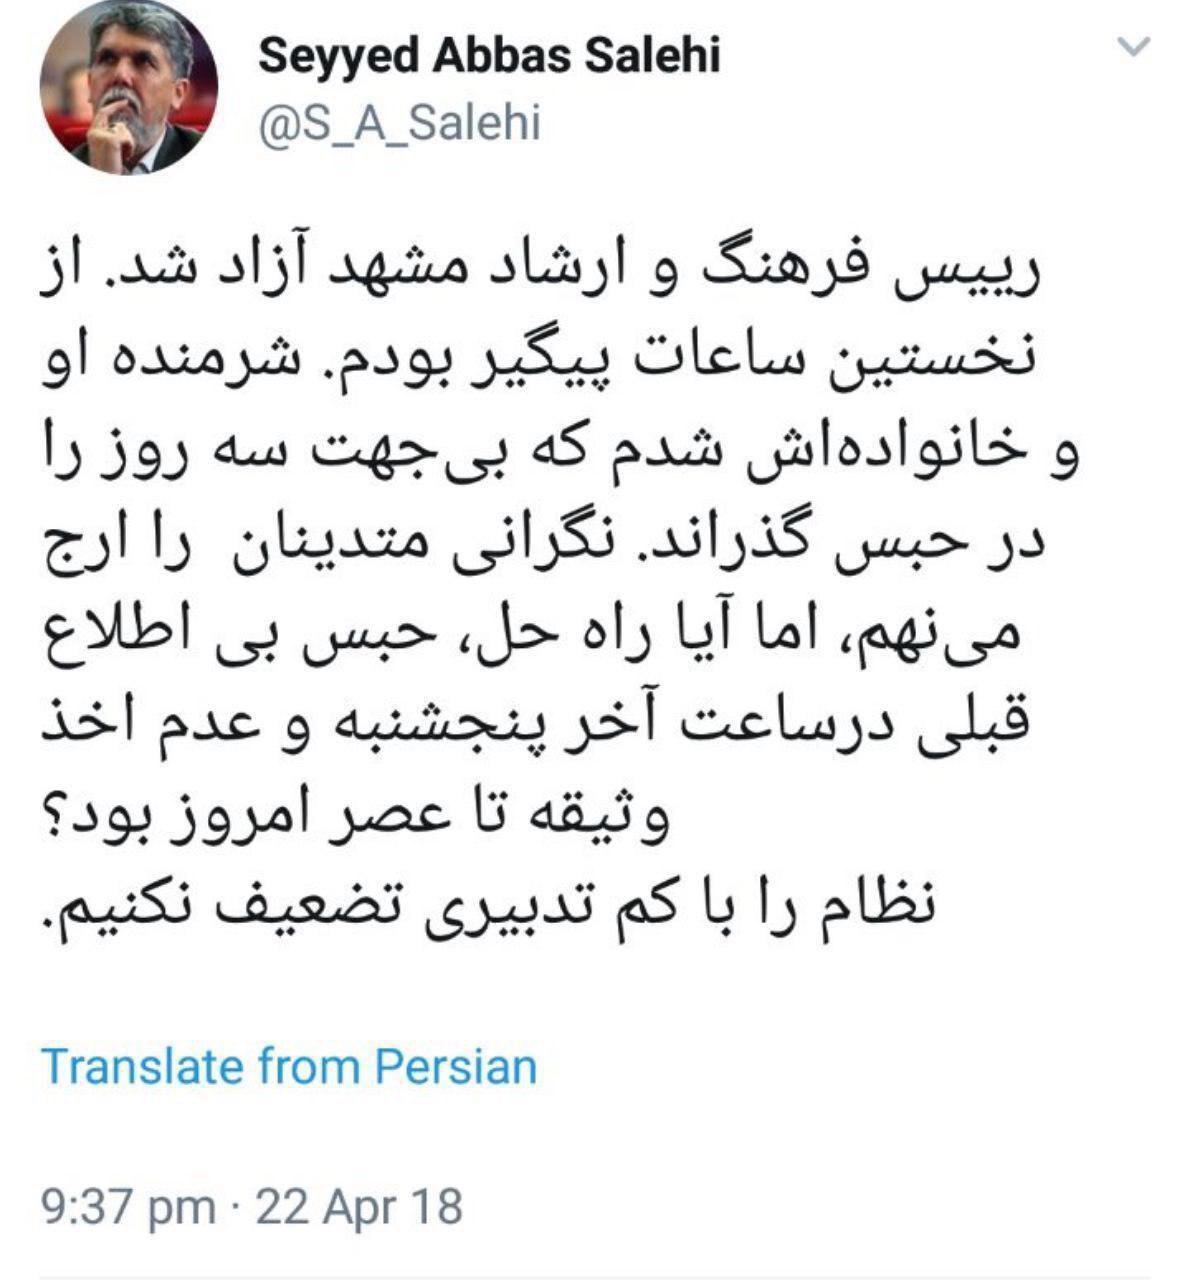 سید عباس صالحی,اخبار سیاسی,خبرهای سیاسی,اخبار سیاسی ایران